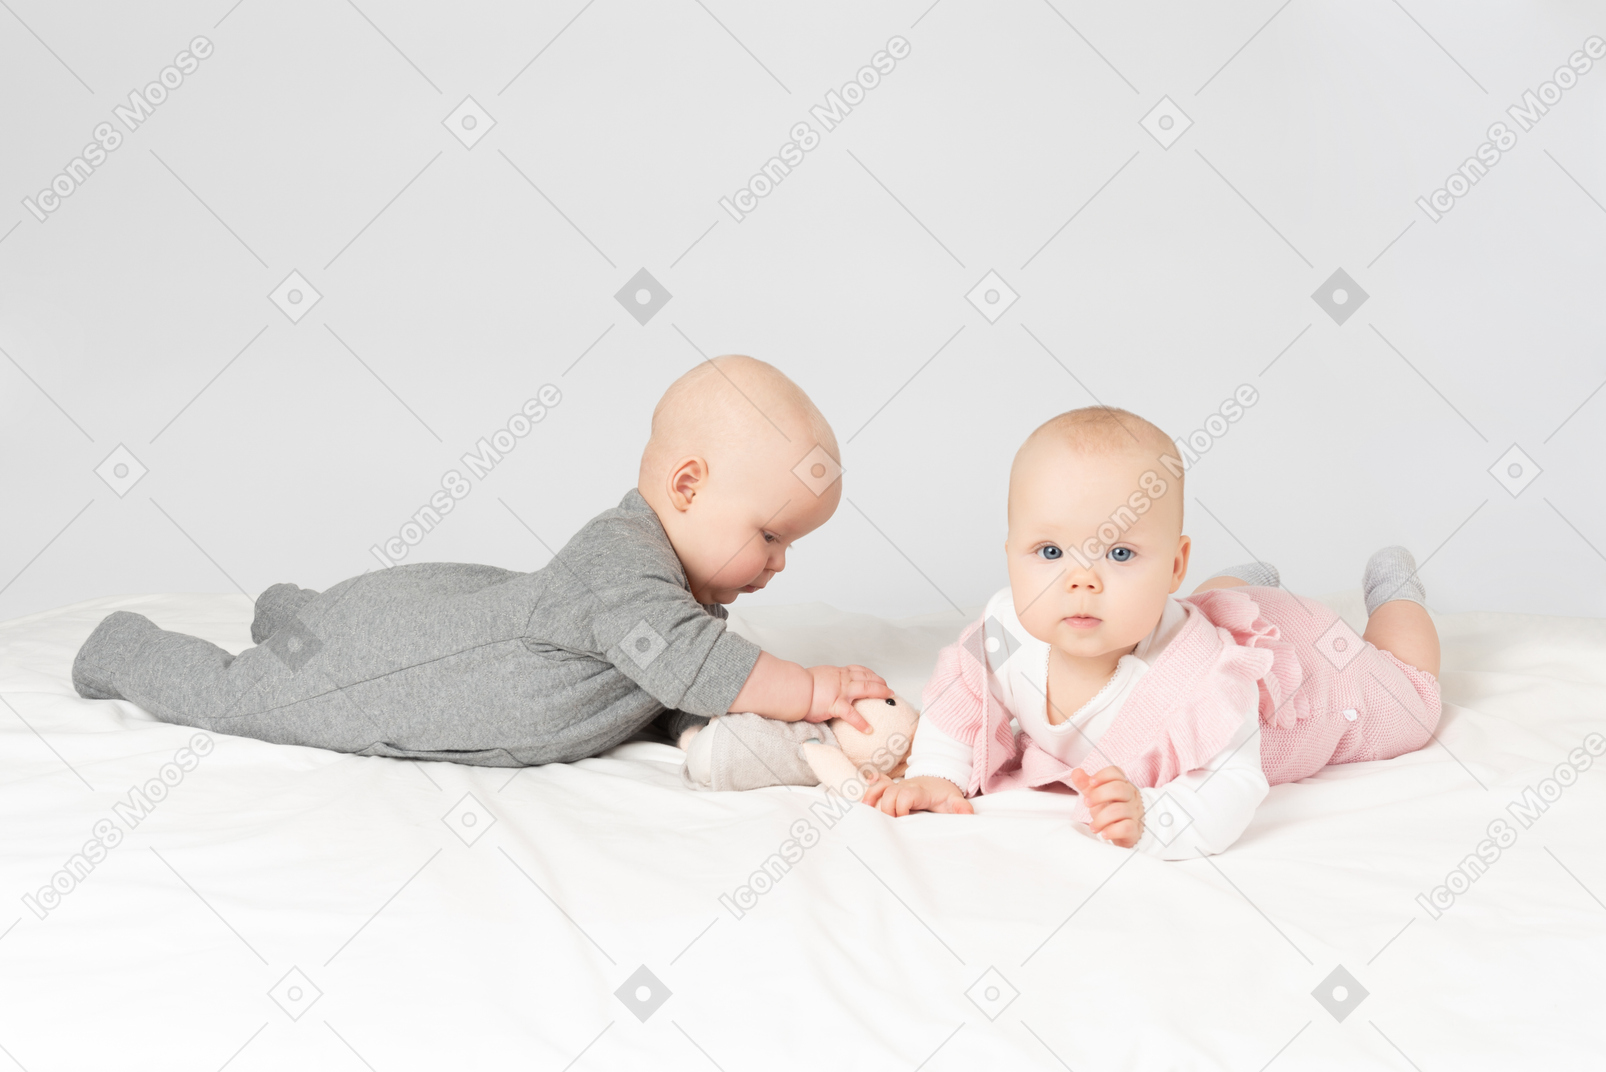 Младенцы близнецы лежат на животе и держат мягкую игрушку